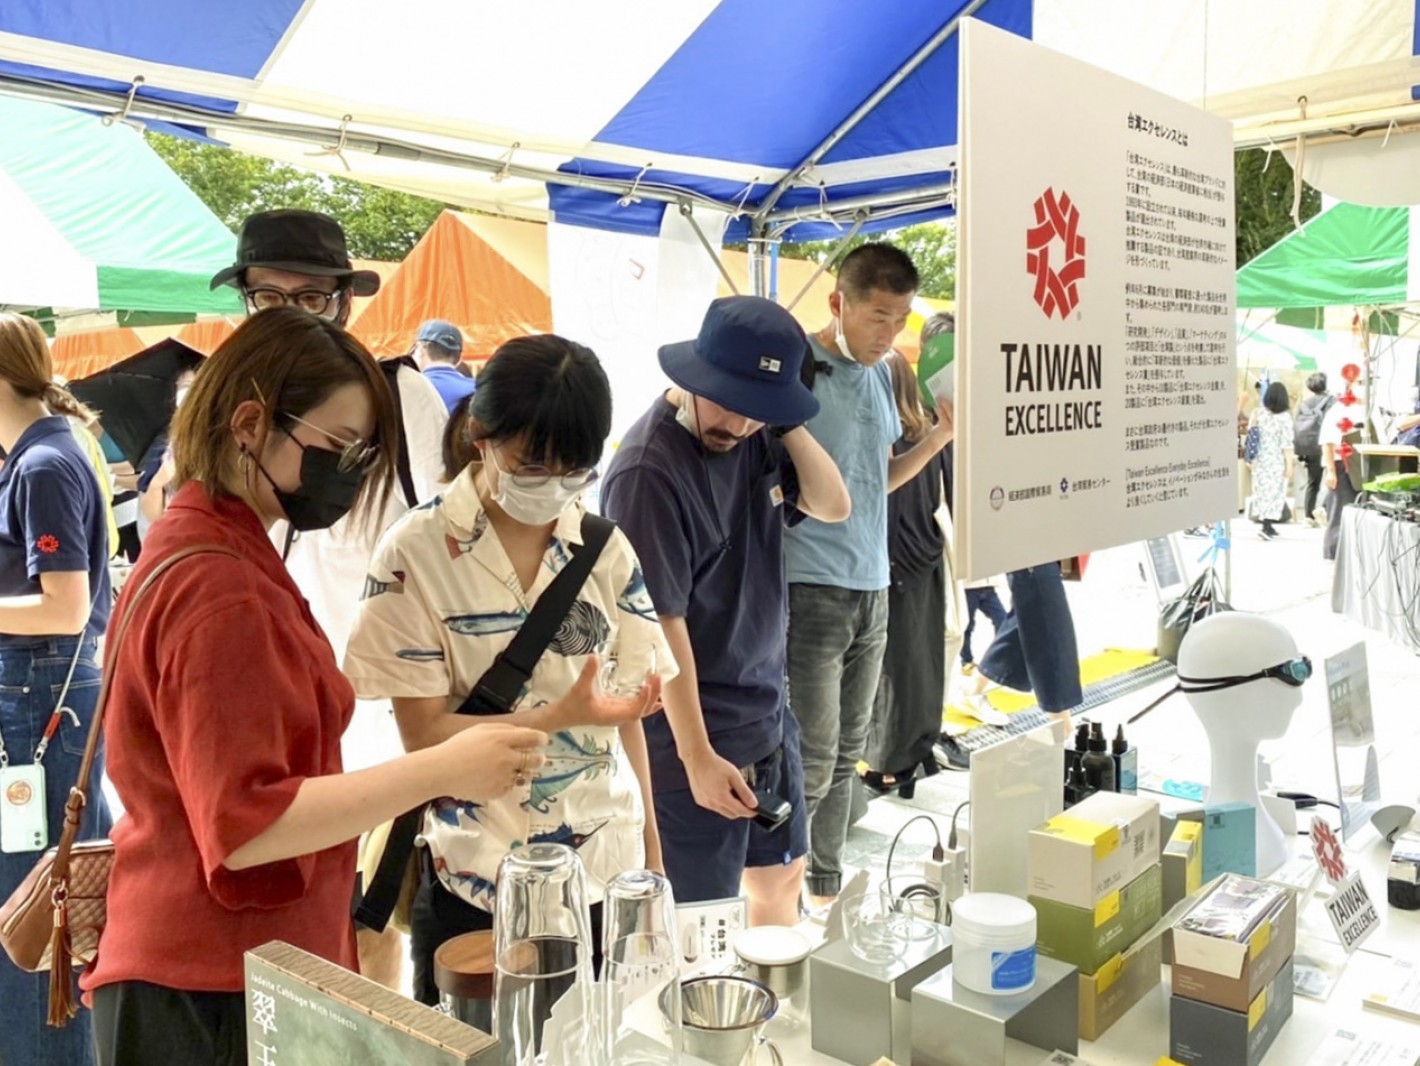 台灣精品攤位辦理豐富贈獎活動，吸引眾多日本民眾參觀得獎產品。